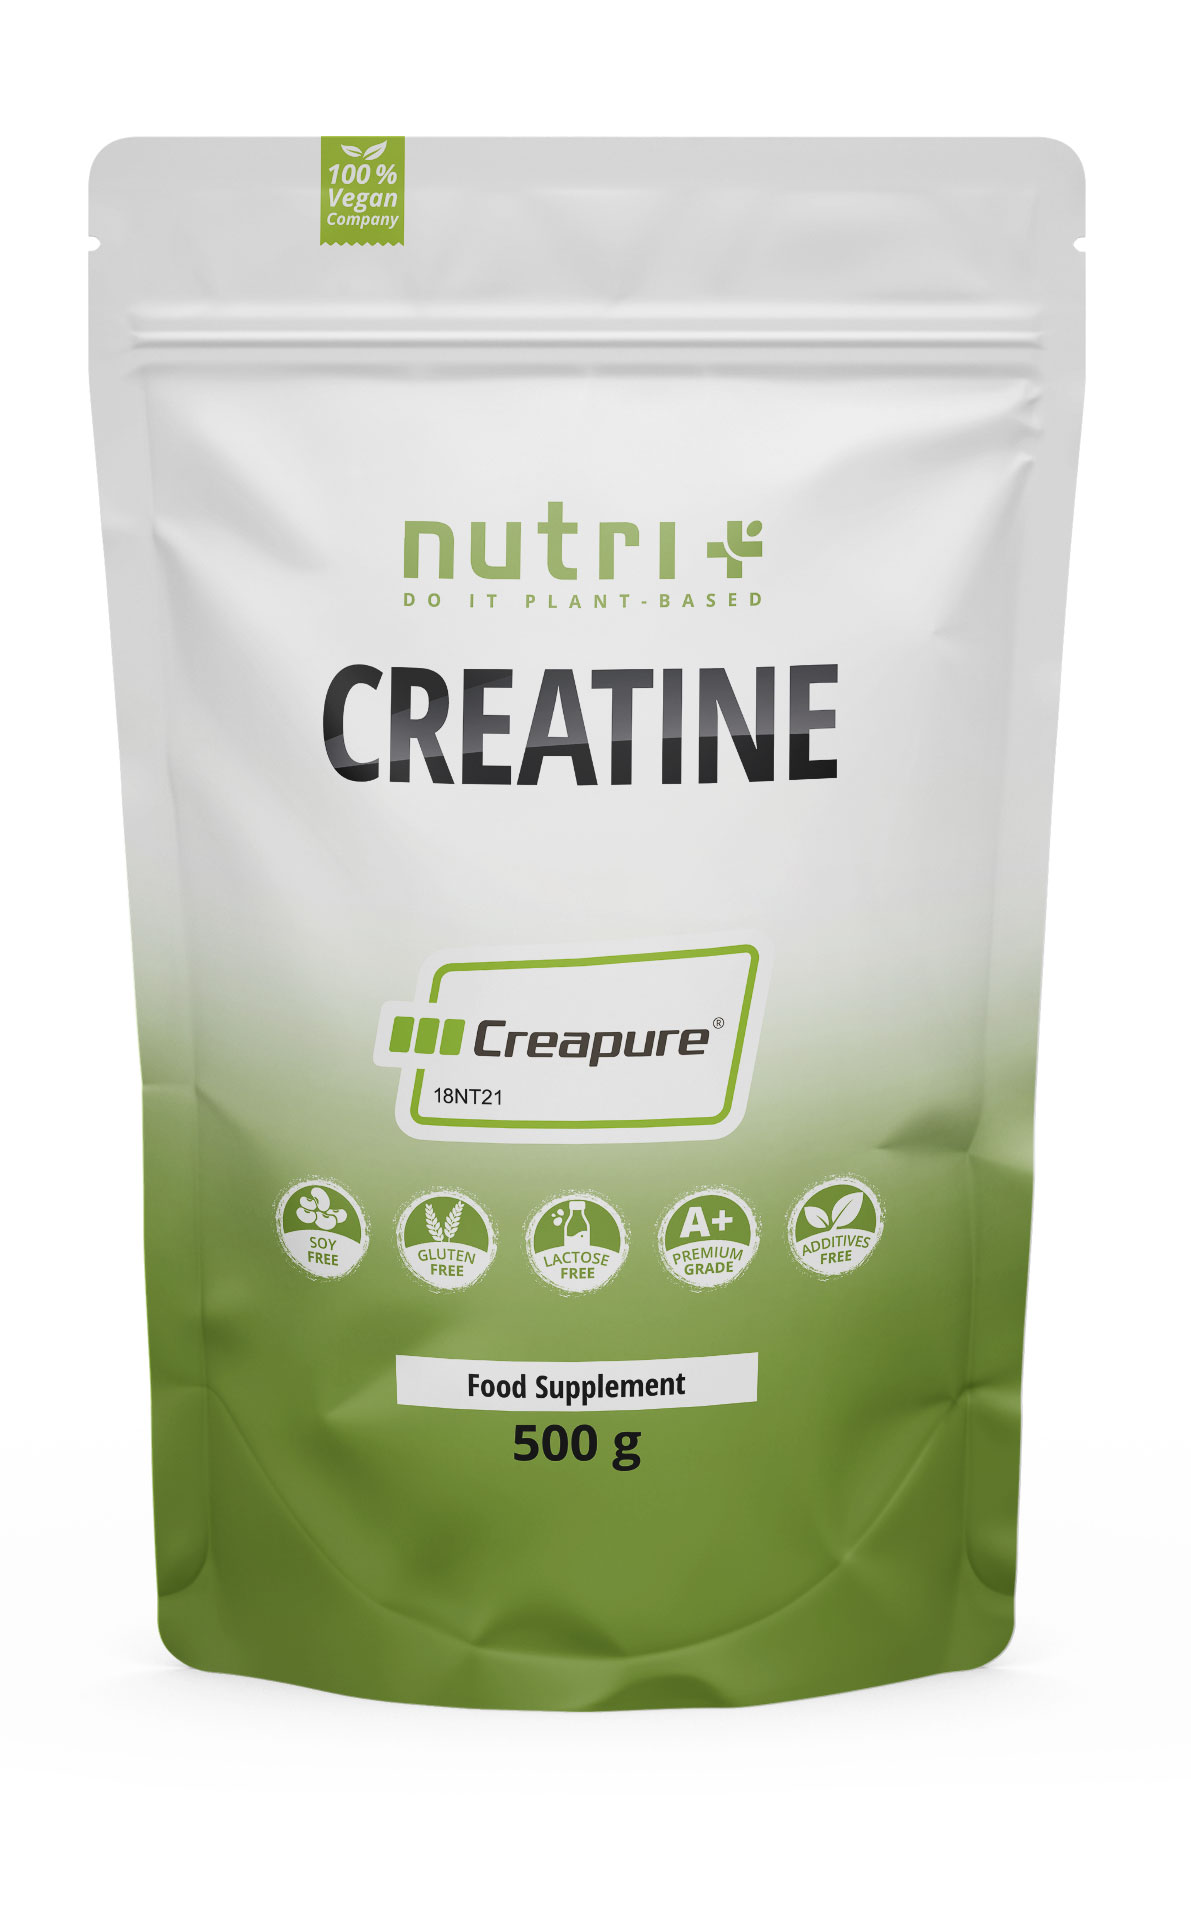 Nutri+ Creatin Monohydrat (Creapure®) | 500g | Pure Leistungssteigerung | Made in Germany | Ideal für Sportler